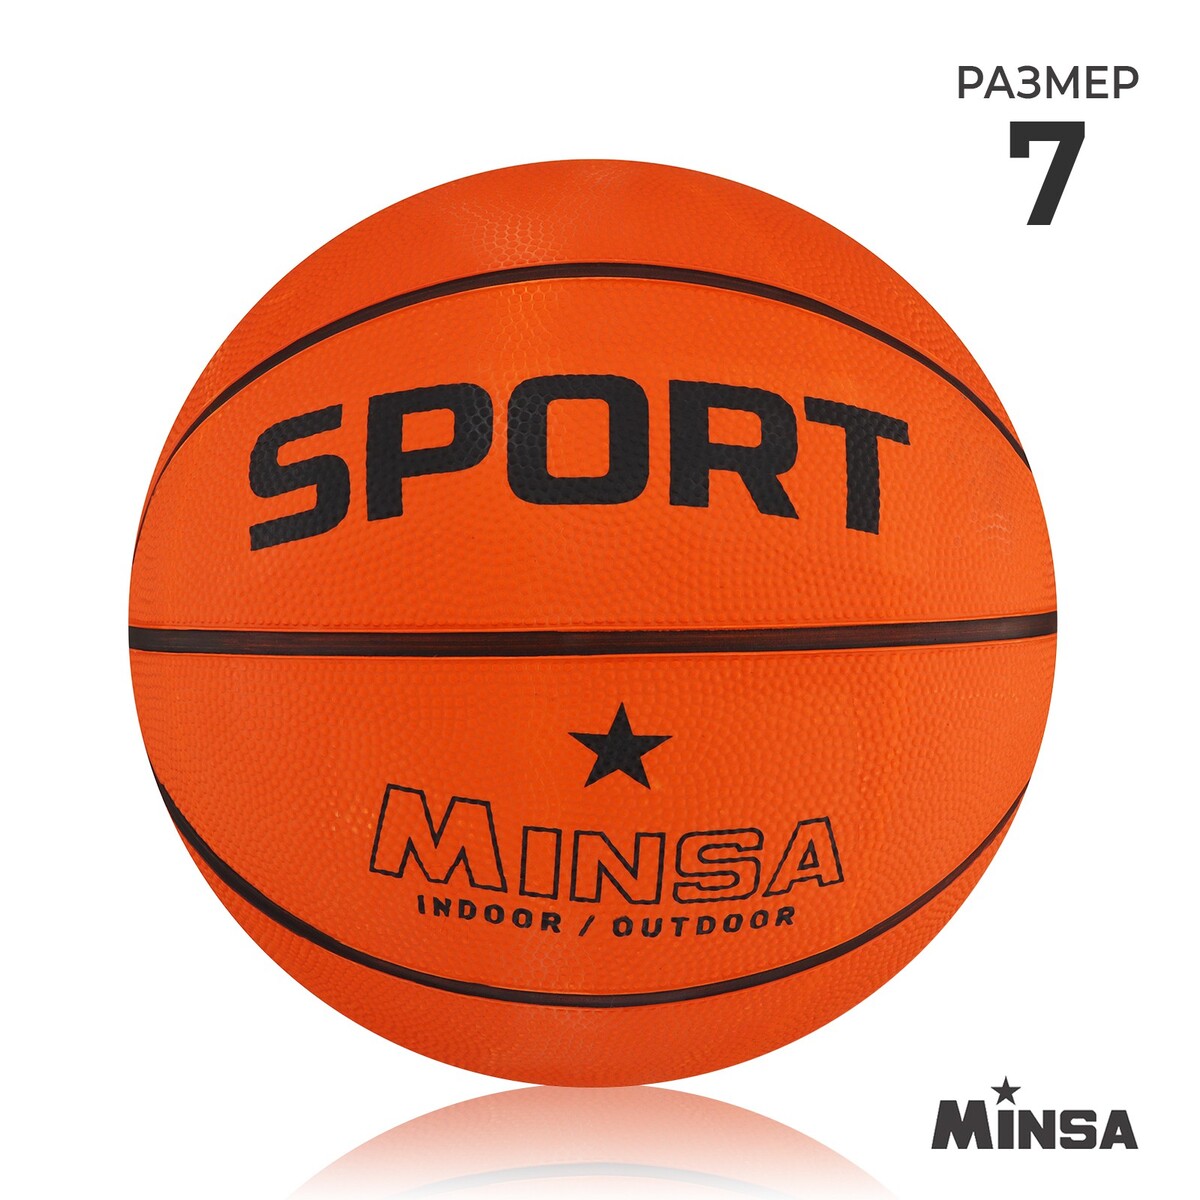 Мяч баскетбольный minsa sport, пвх, клееный, 8 панелей, р. 7 баскетбольный мяч minsa тренировочный pu клееный 8 панелей р 6